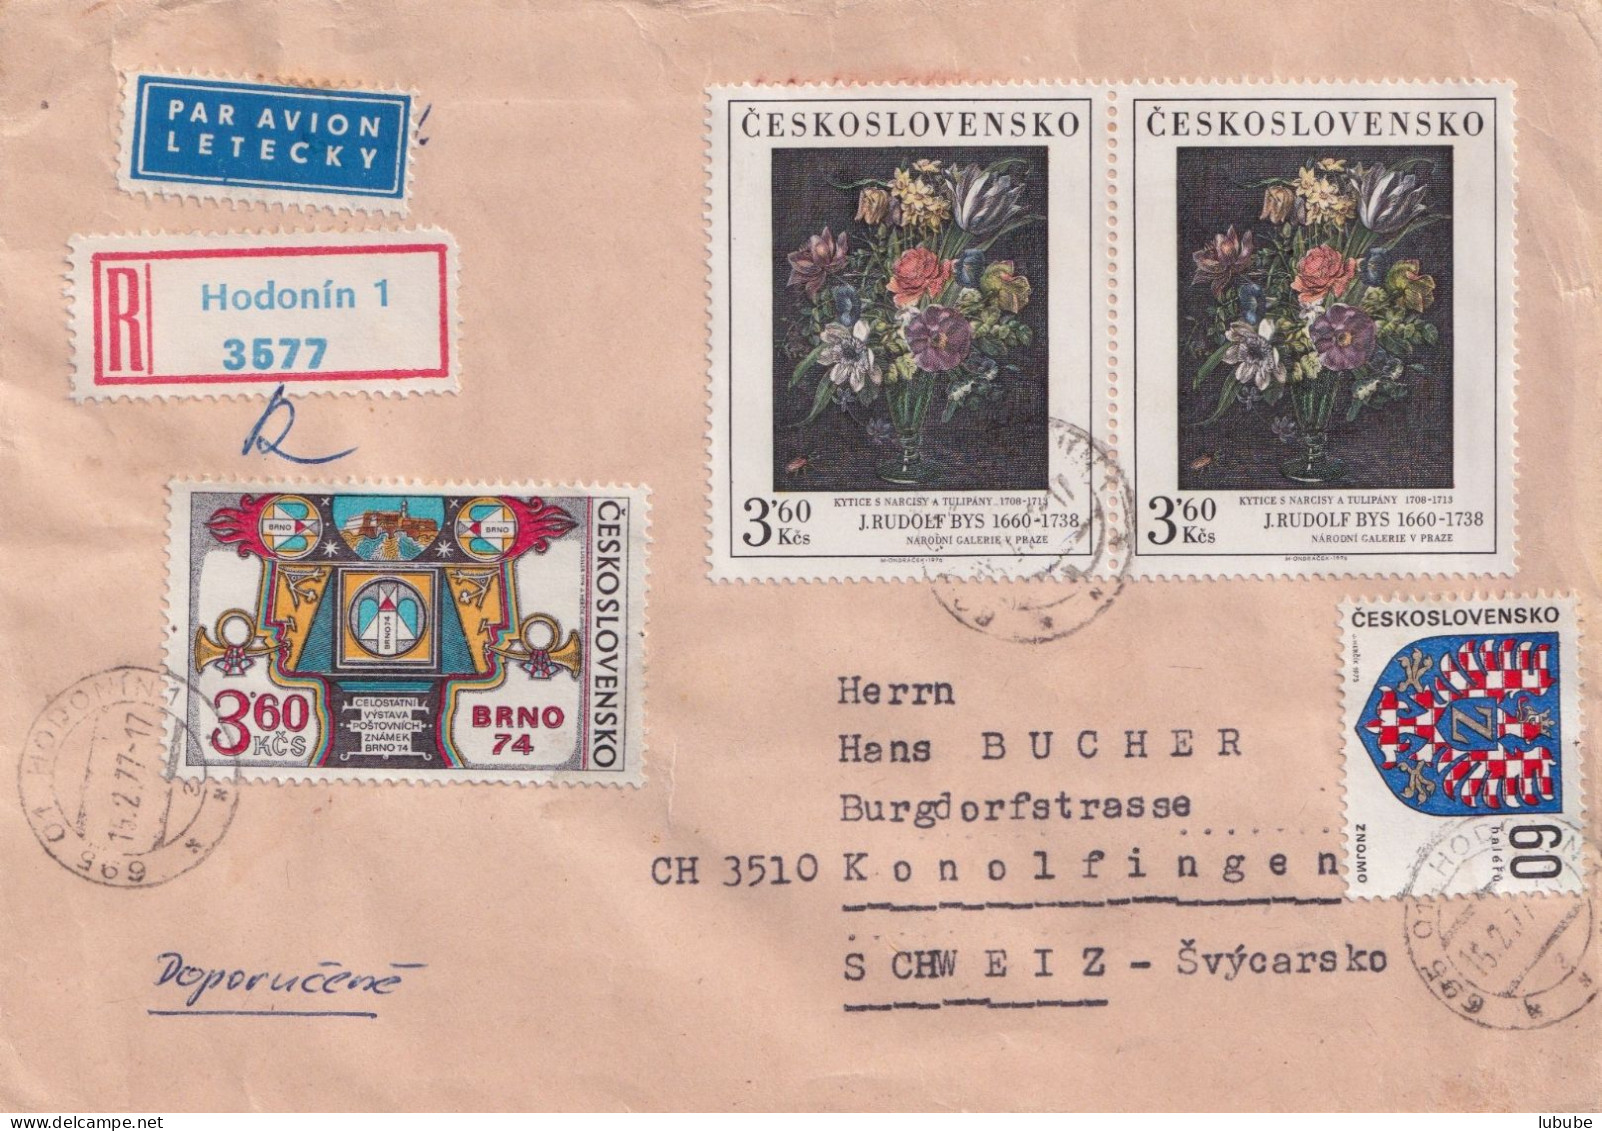 Luftpost R Brief  Hodonin - Konolfingen         1977 - Briefe U. Dokumente